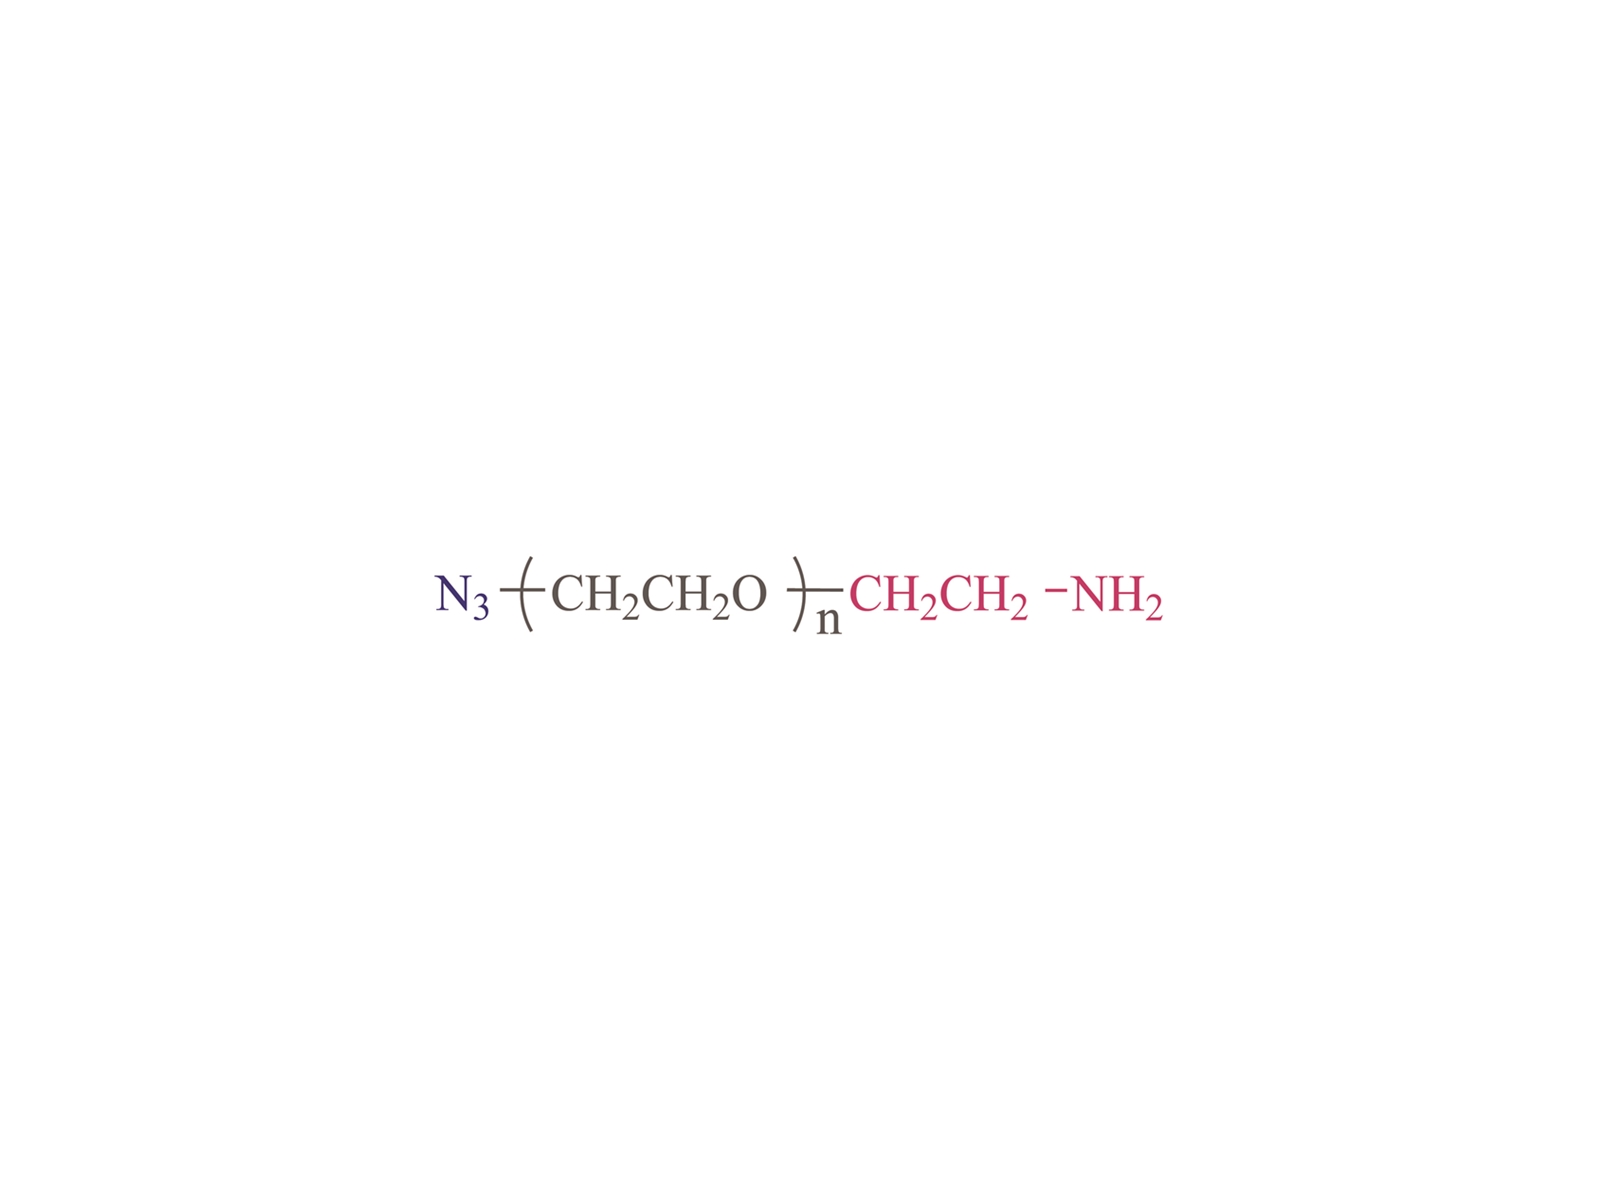 α-azido-ω-amino poli (etilenglicol) [N3-PEG-NH2] CAS: 464190-91-8,166388-57-4,134179-38-7,95171-92-4.516493-93-4, 957486-82-7,1333154-77-0,857891-82-8,912849-73-1,128414-71-4